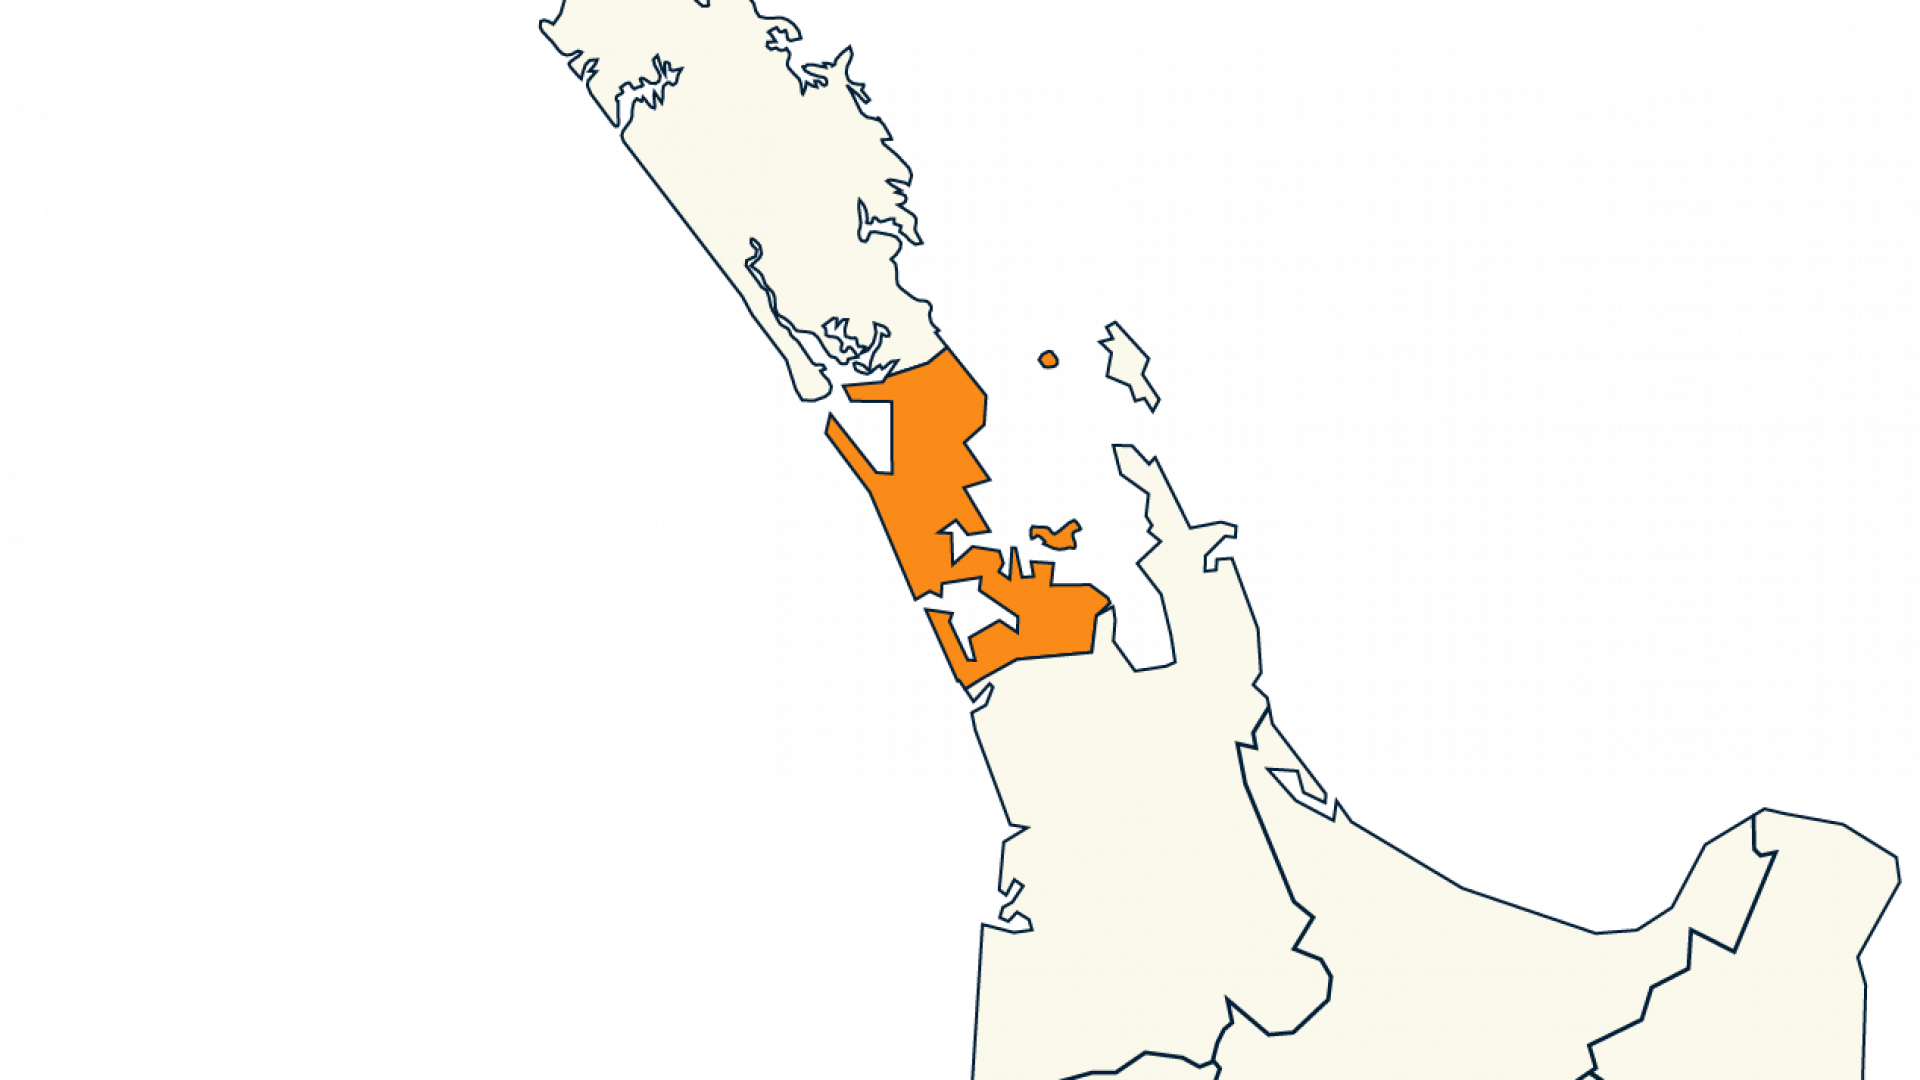 auckland region 2